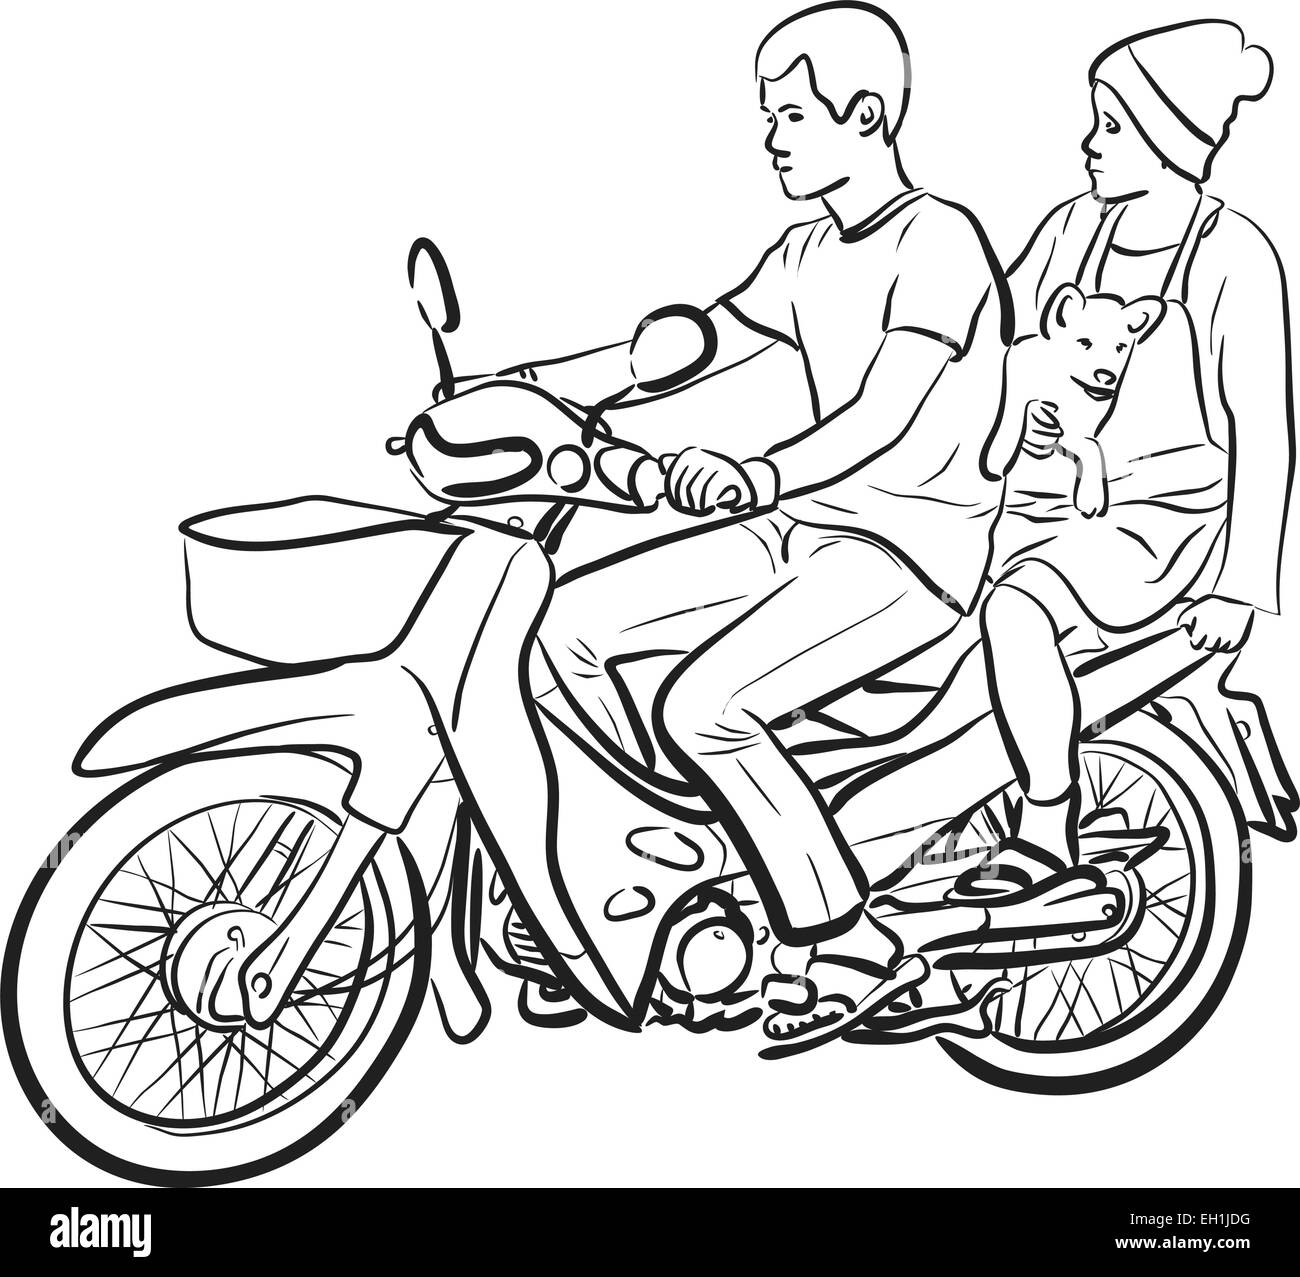 Bearbeitbares Vektor Skizze von zwei Personen und ein Hund auf einem Motorrad Stock Vektor